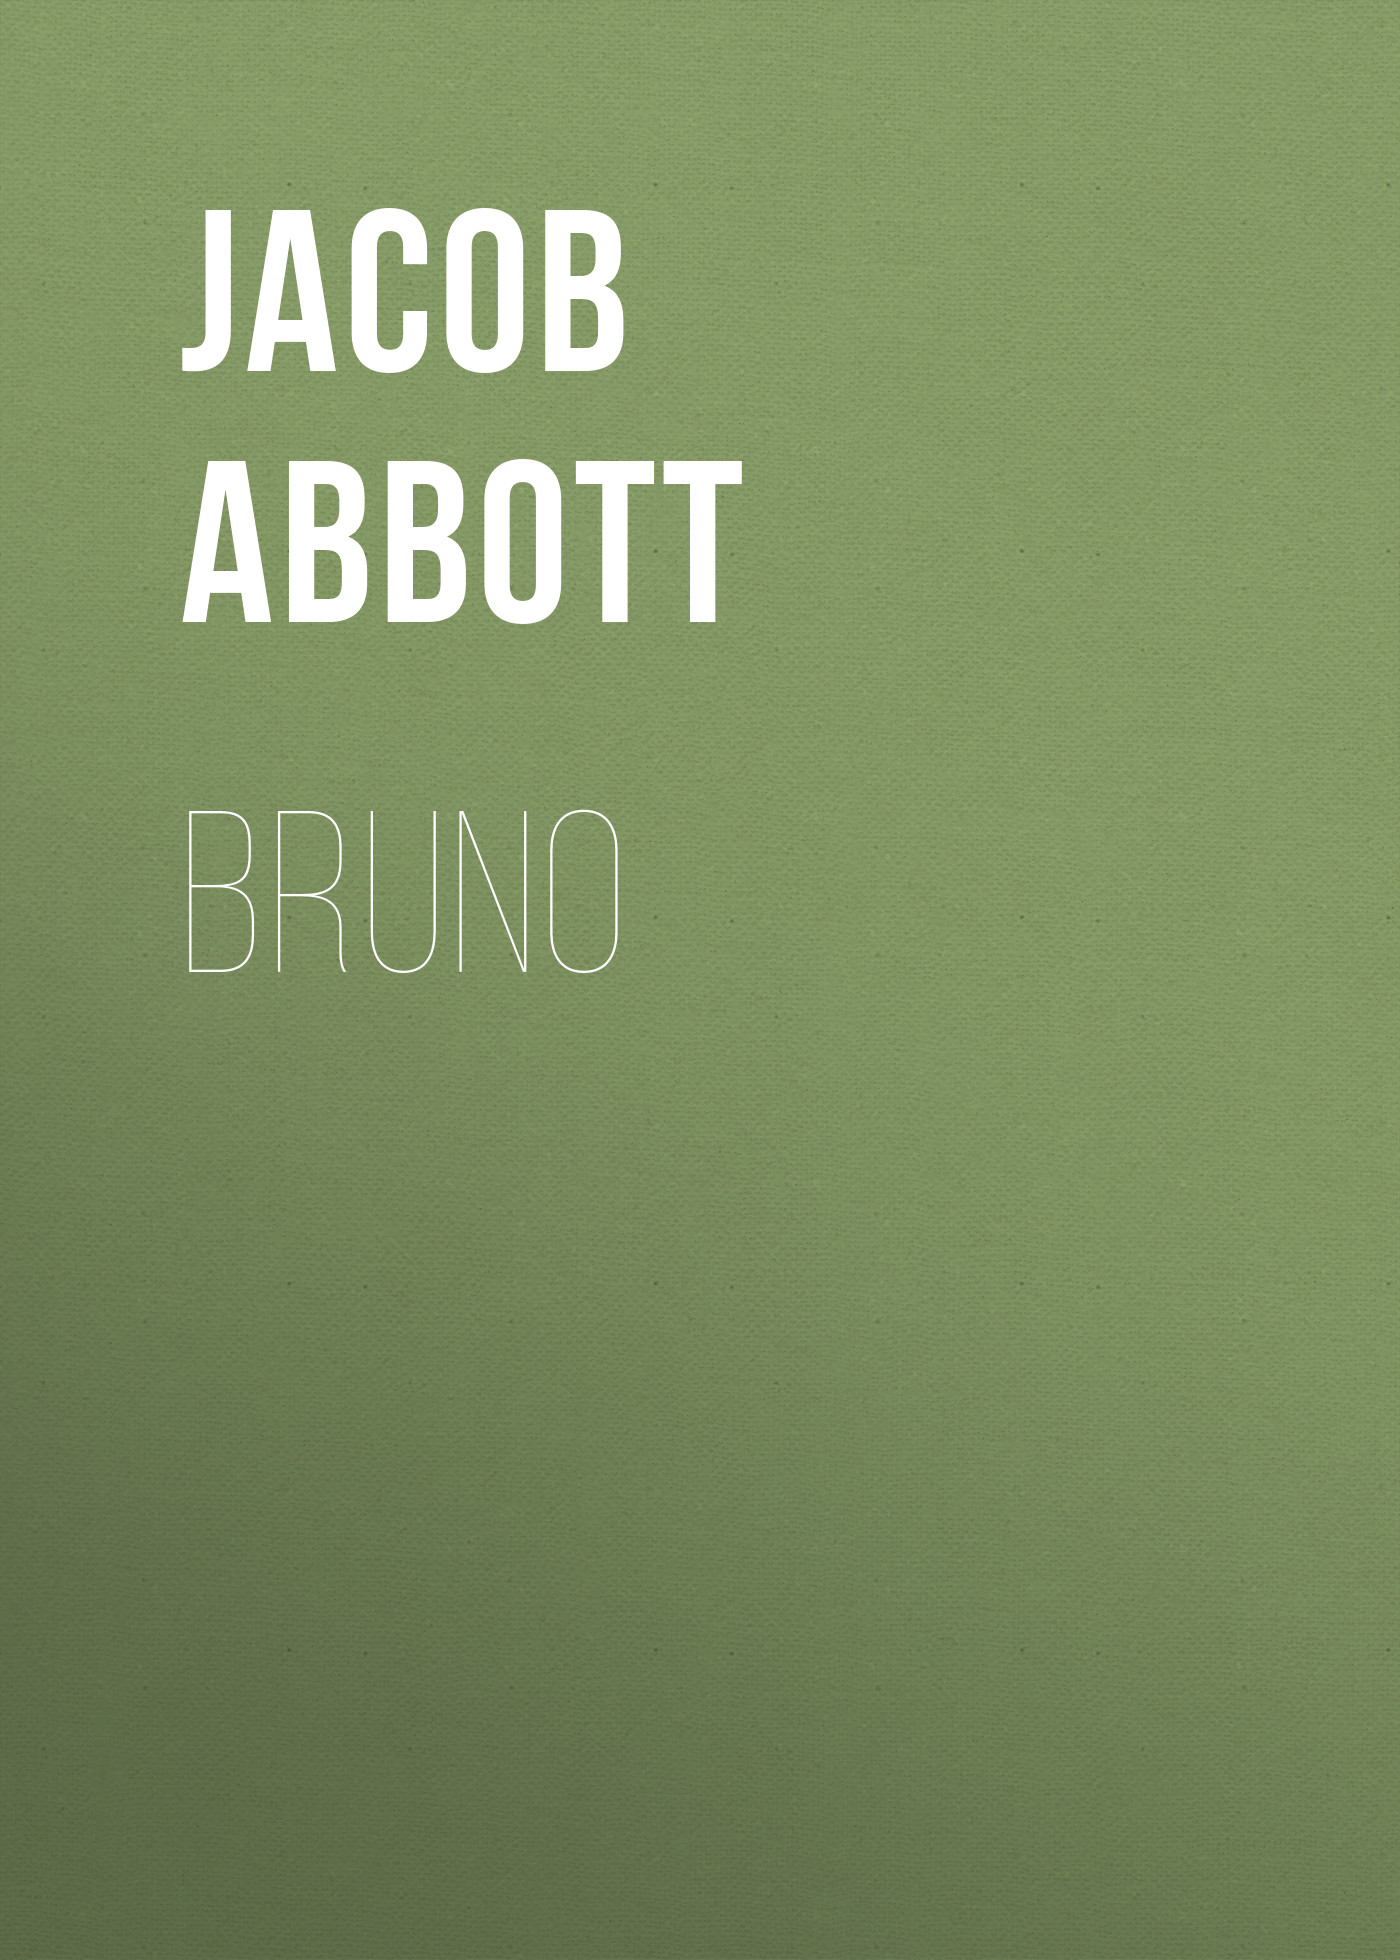 Книга Bruno из серии , созданная Jacob Abbott, может относится к жанру Зарубежная старинная литература, Зарубежная классика. Стоимость электронной книги Bruno с идентификатором 24174228 составляет 0 руб.